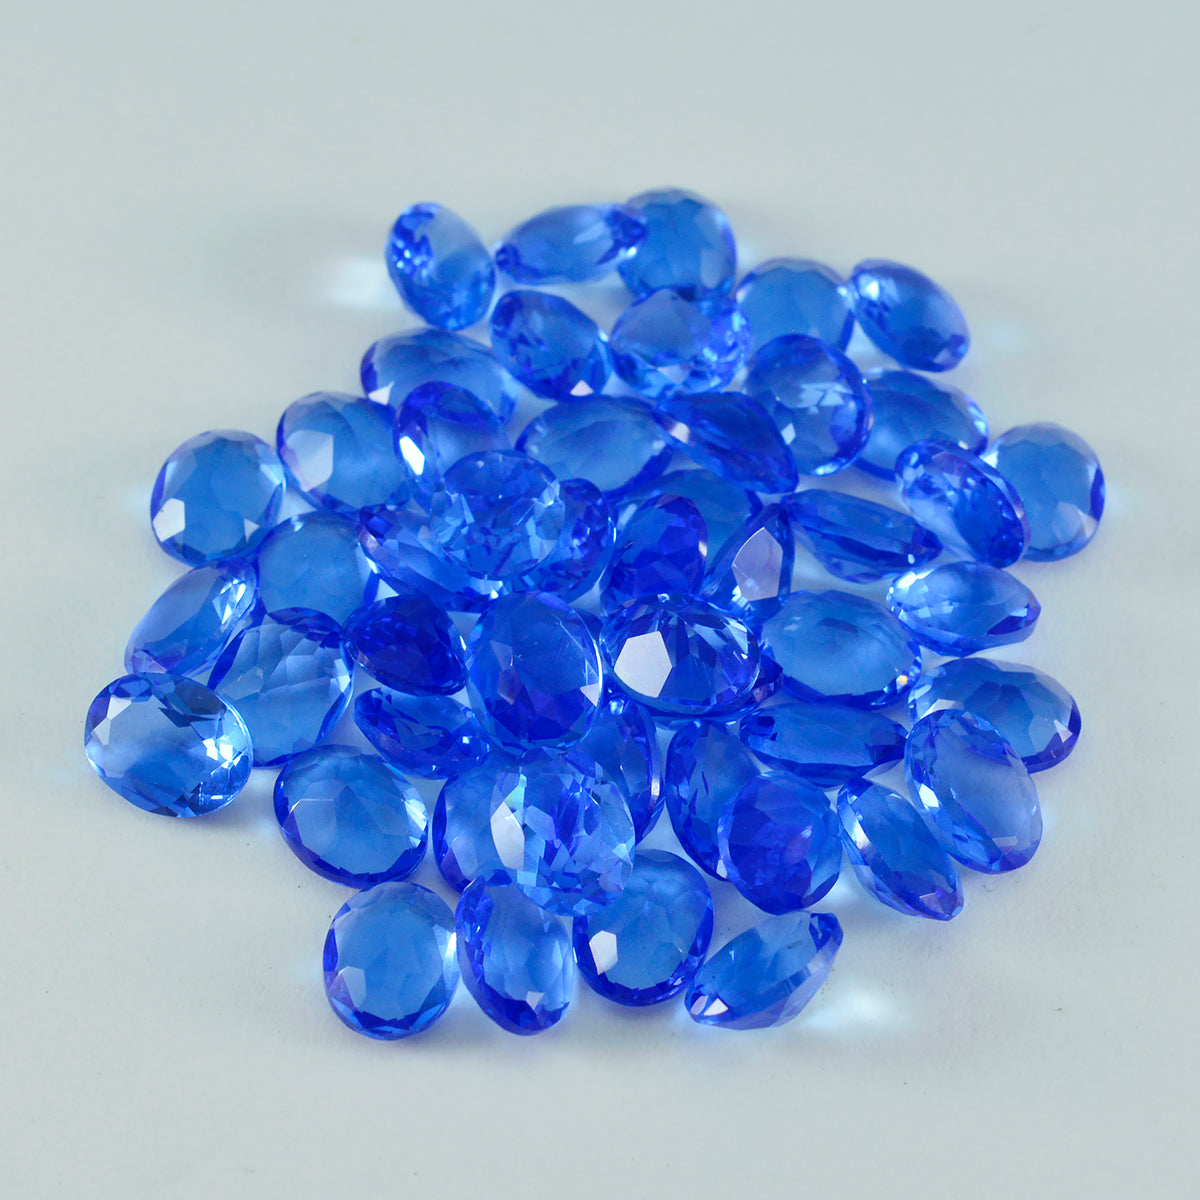 Riyogems 1 Stück blauer Saphir, CZ, facettiert, 3 x 5 mm, ovale Form, AA-Qualität, lose Edelsteine